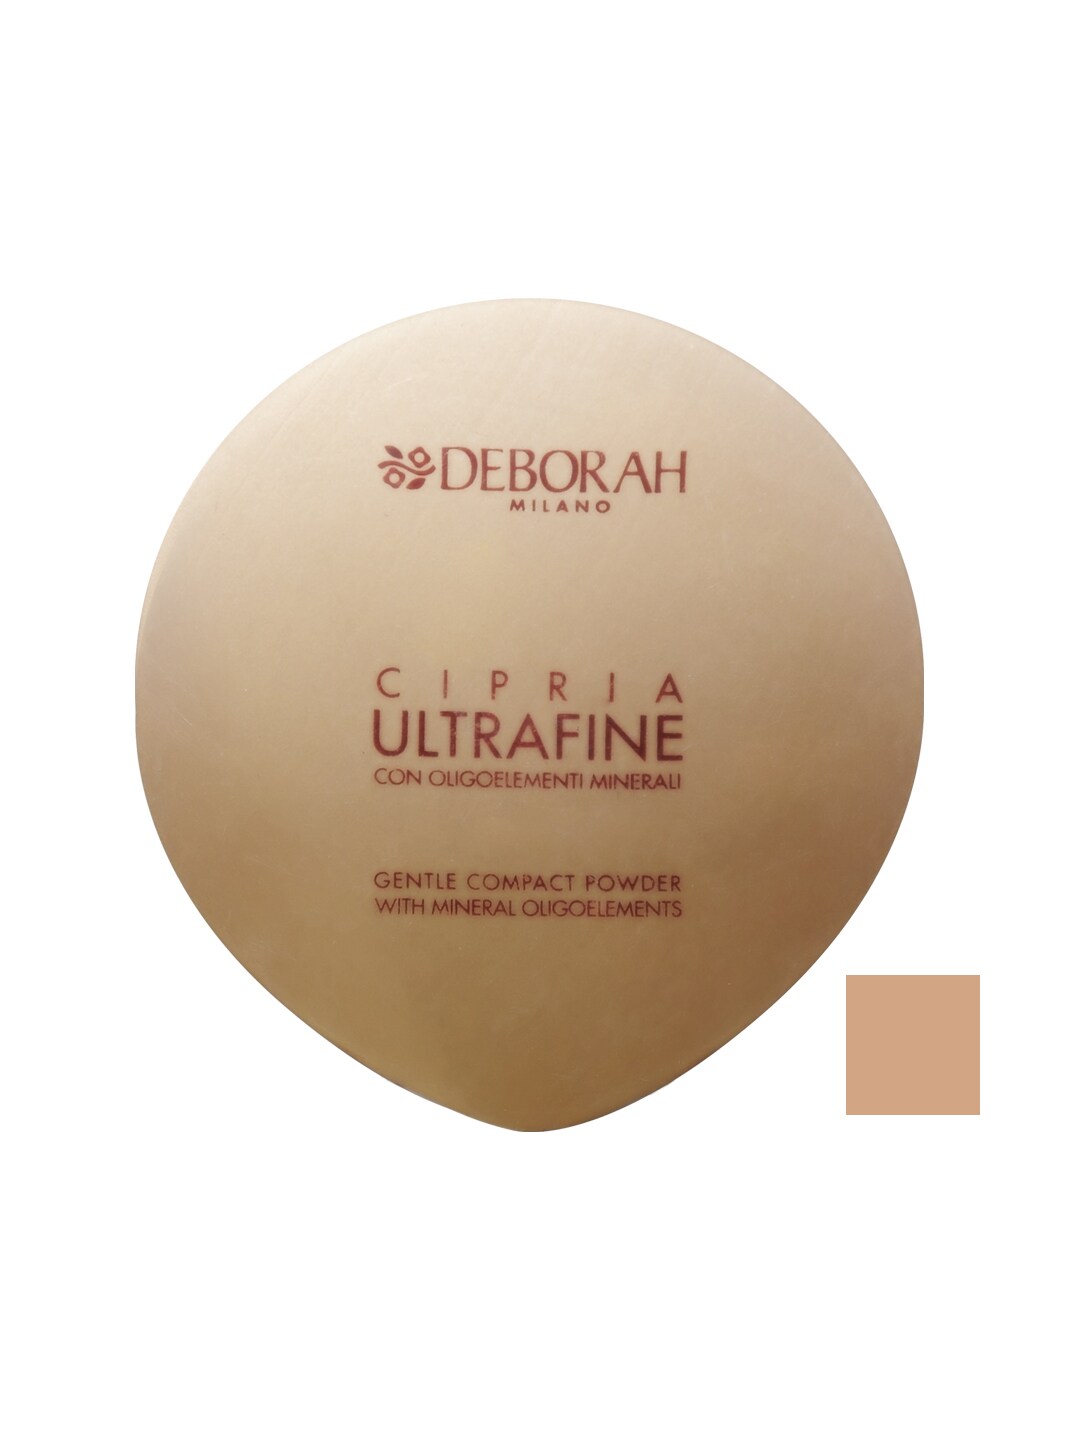 Deborah Ultrafine Compact Powder 08